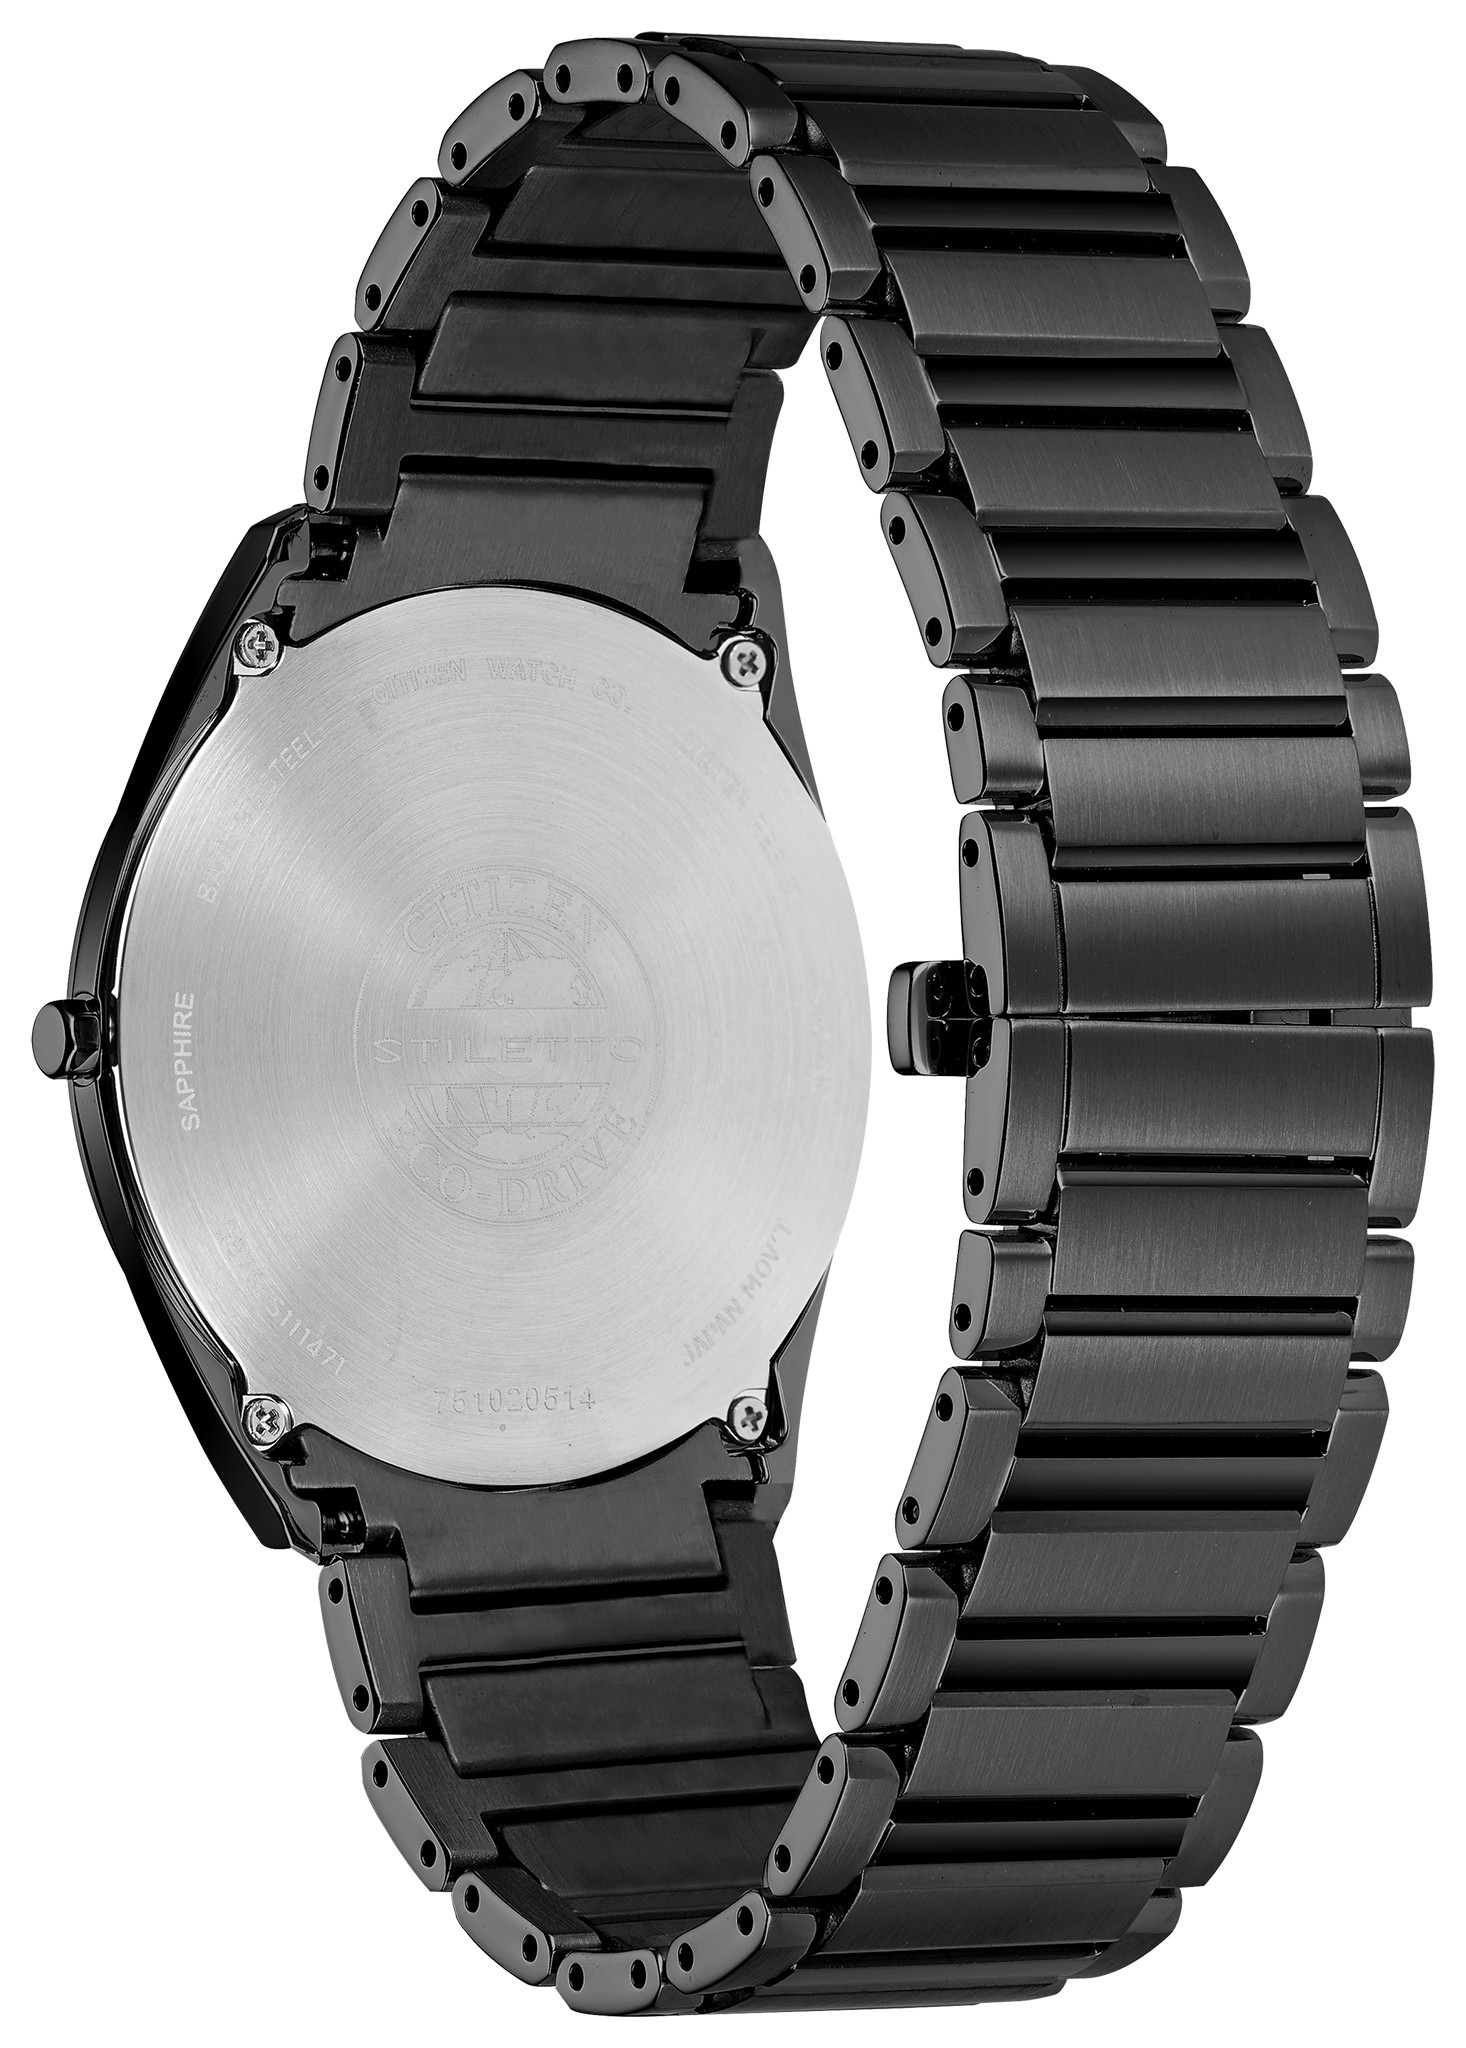 Share 156+ citizen slim black watch best - songngunhatanh.edu.vn